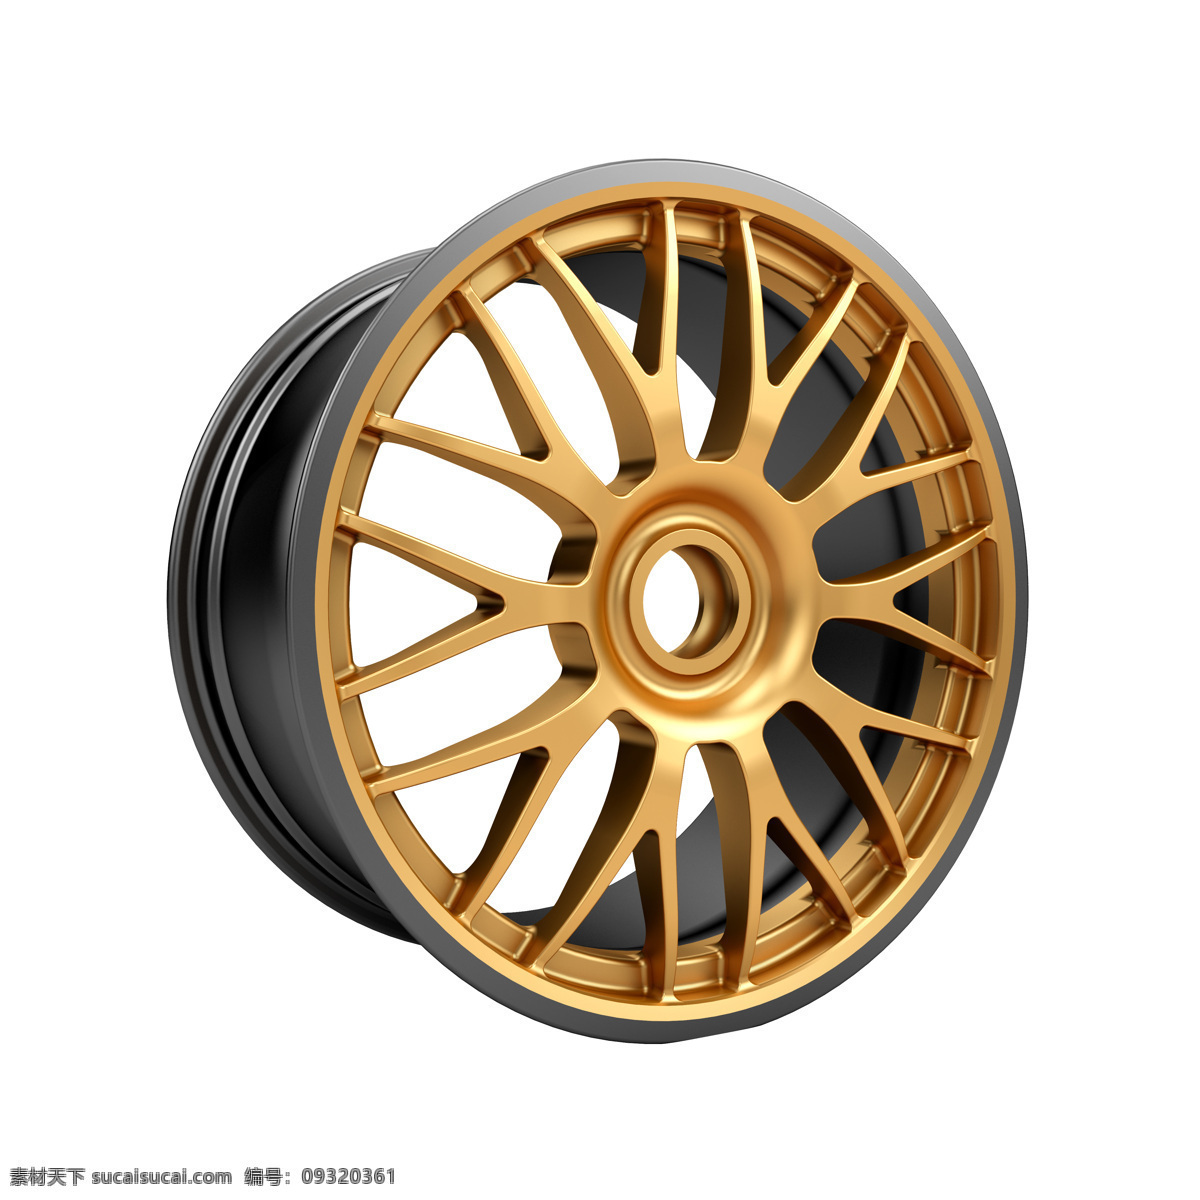 金色汽车轮毂 轮毂 车轮 轿车轮毂 汽车轮毂 汽车零件 轿车配件 汽配 轮毂模型 其他类别 生活百科 白色